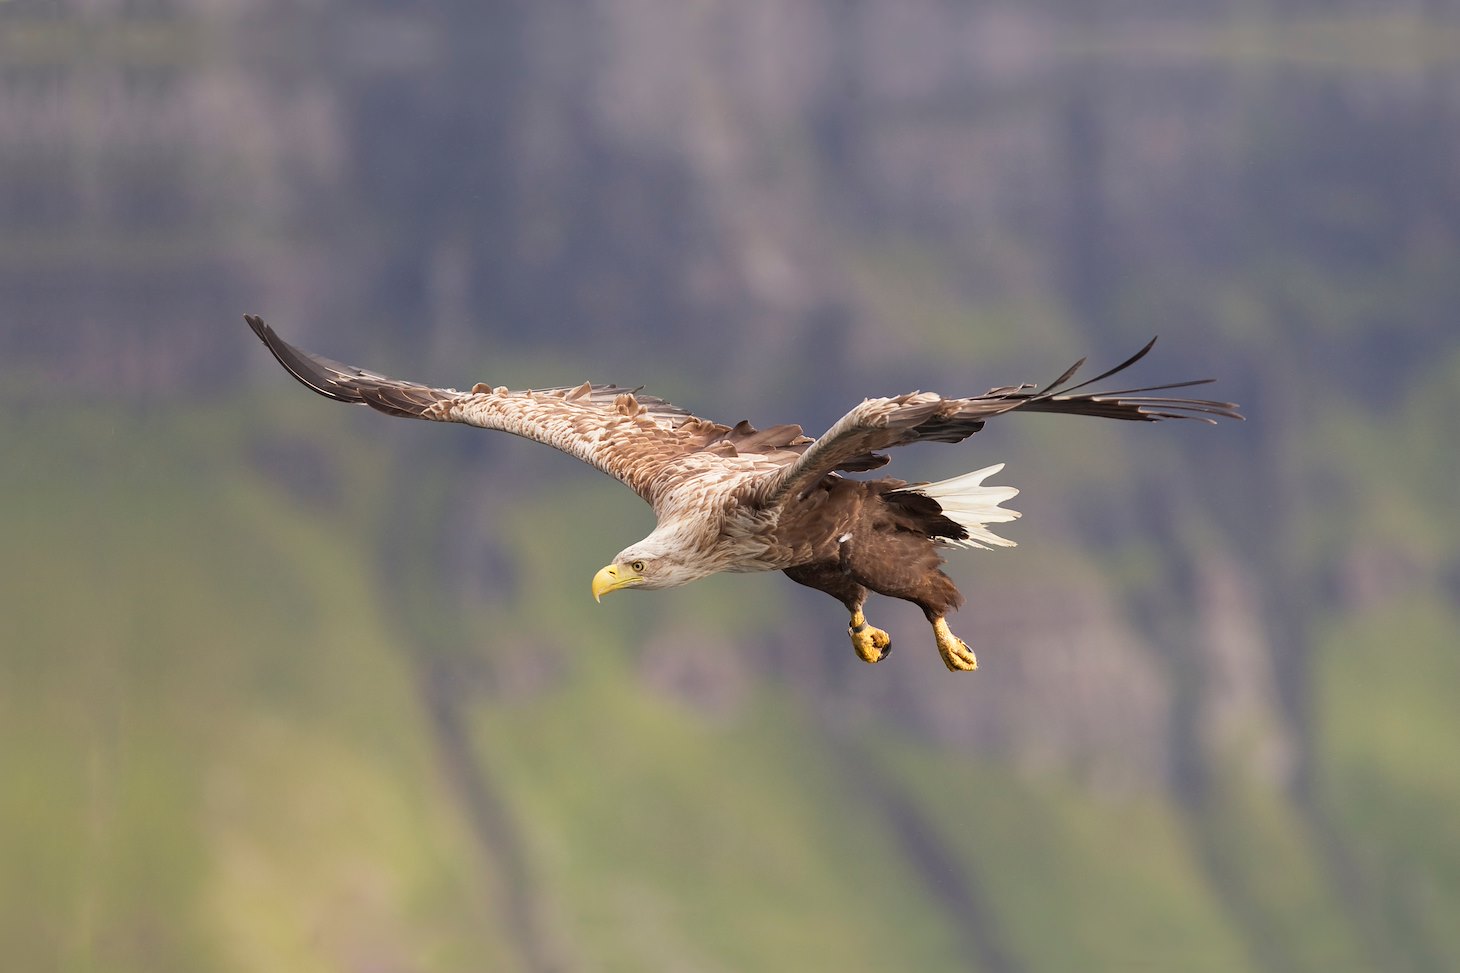 Sea eagle (haliaetus albicilla) in flight, Portree, Skye, Scotland.